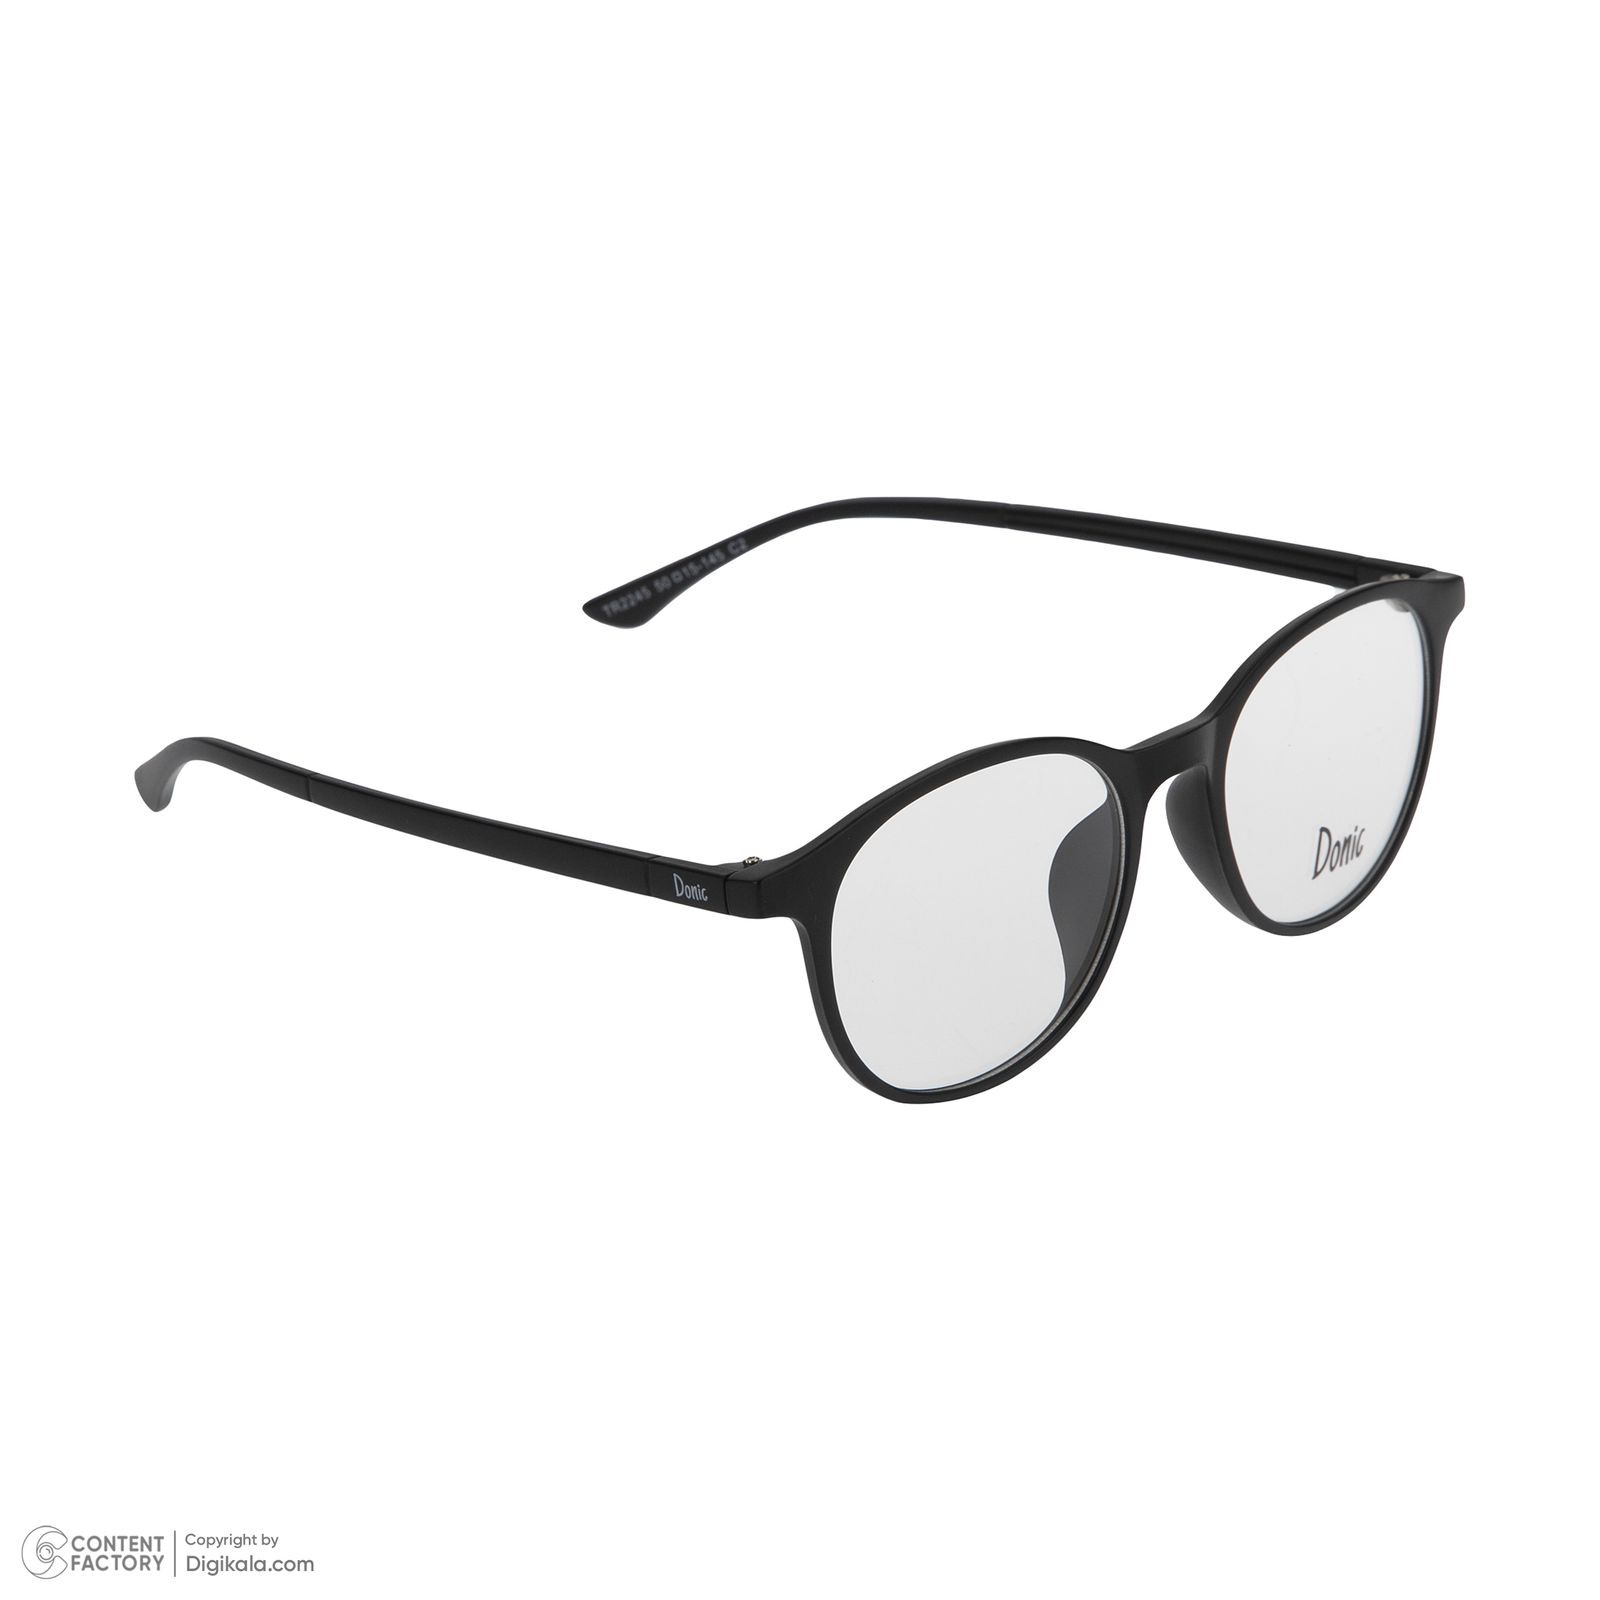 فریم عینک طبی دونیک مدل tr2245-c2 به همراه کاور آفتابی -  - 3